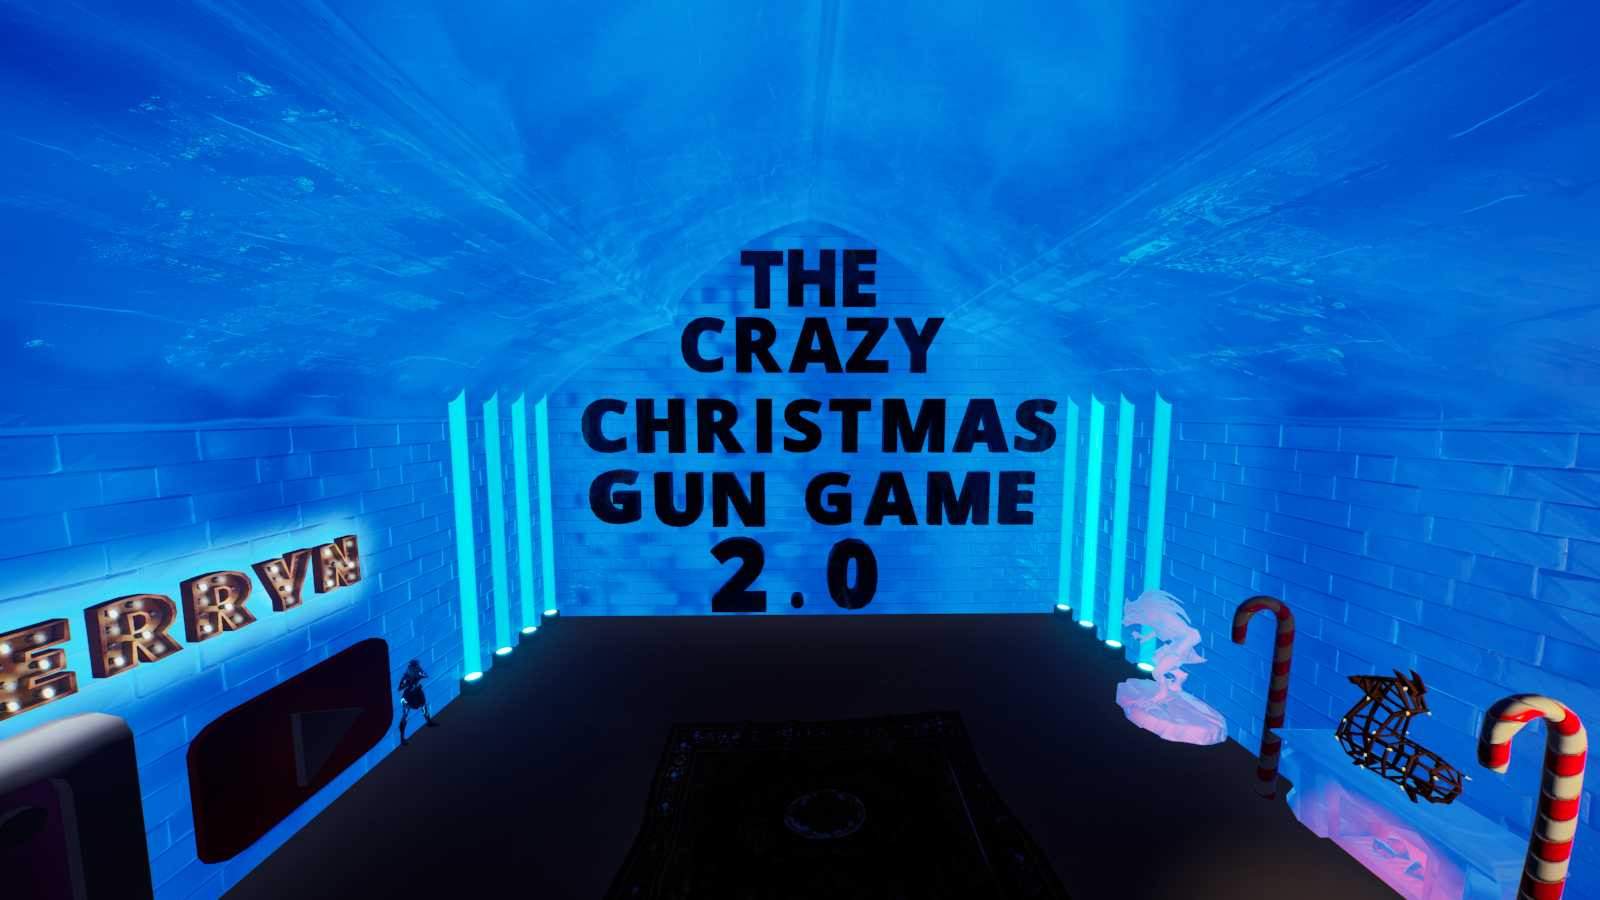 The Crazy Christmas Gun Game 2.0